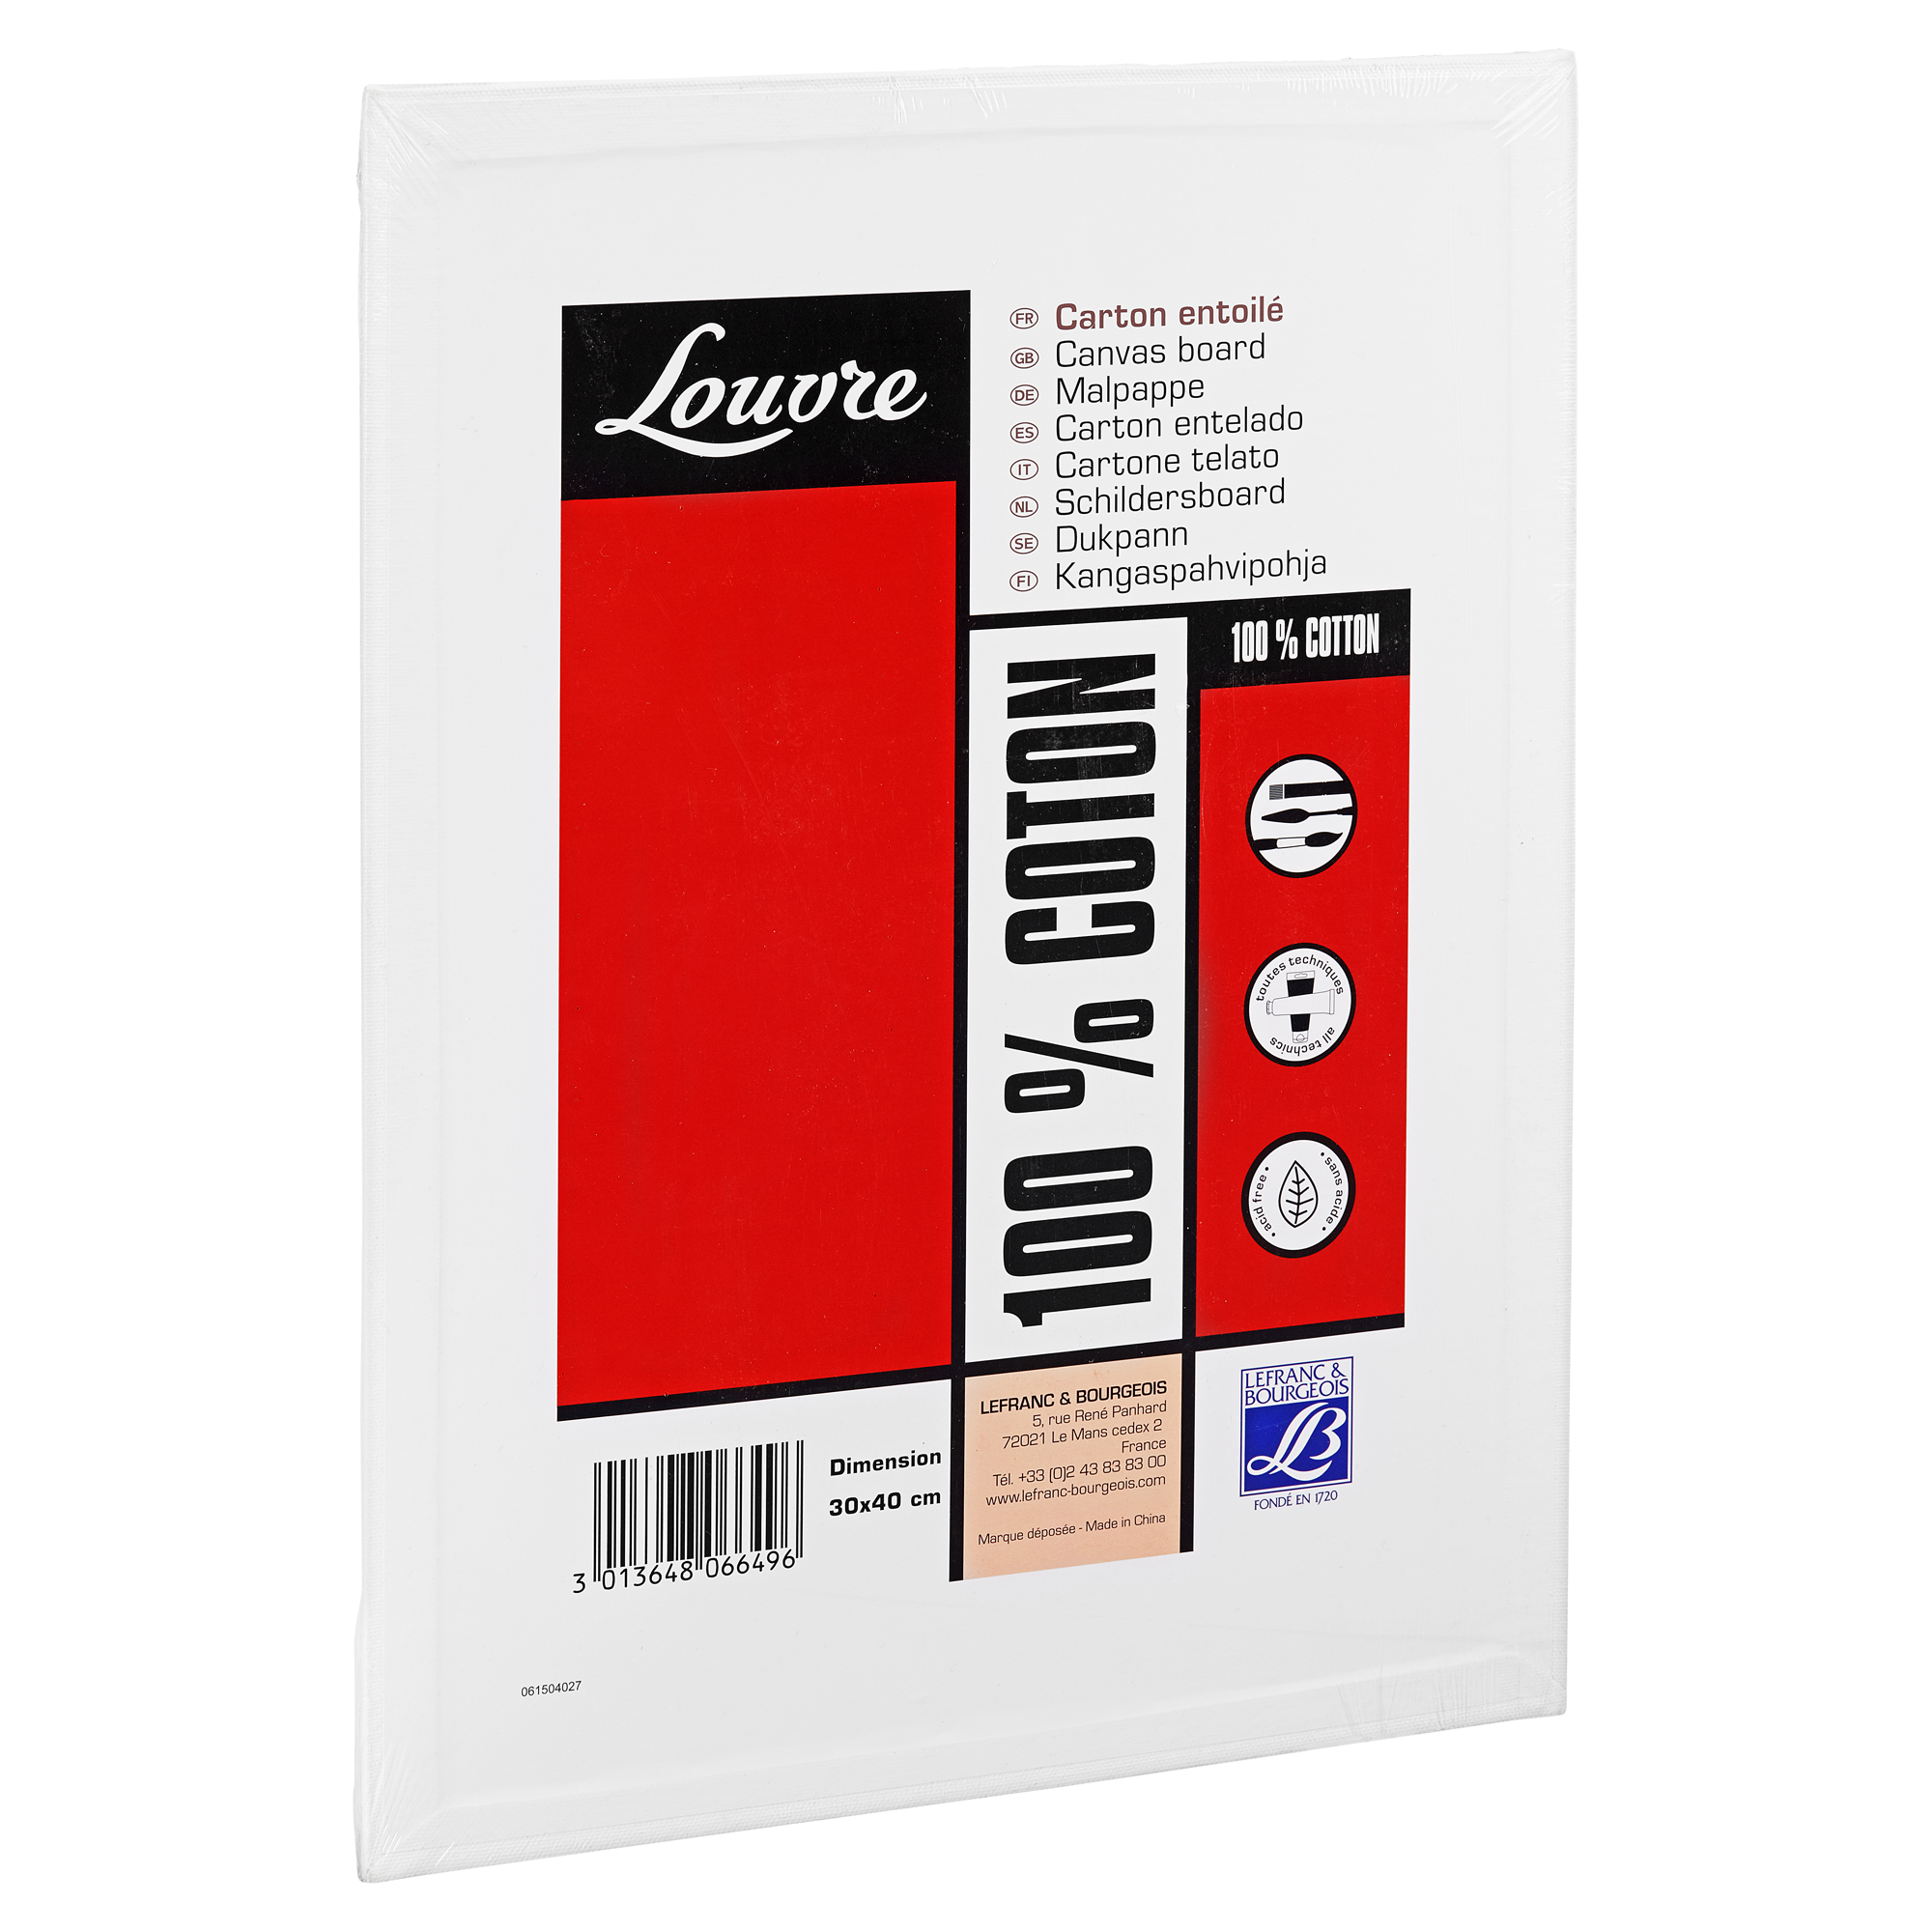 Malpappe "Louvre" Karton baumwollbespannt weiß 30 x 40 cm + product picture